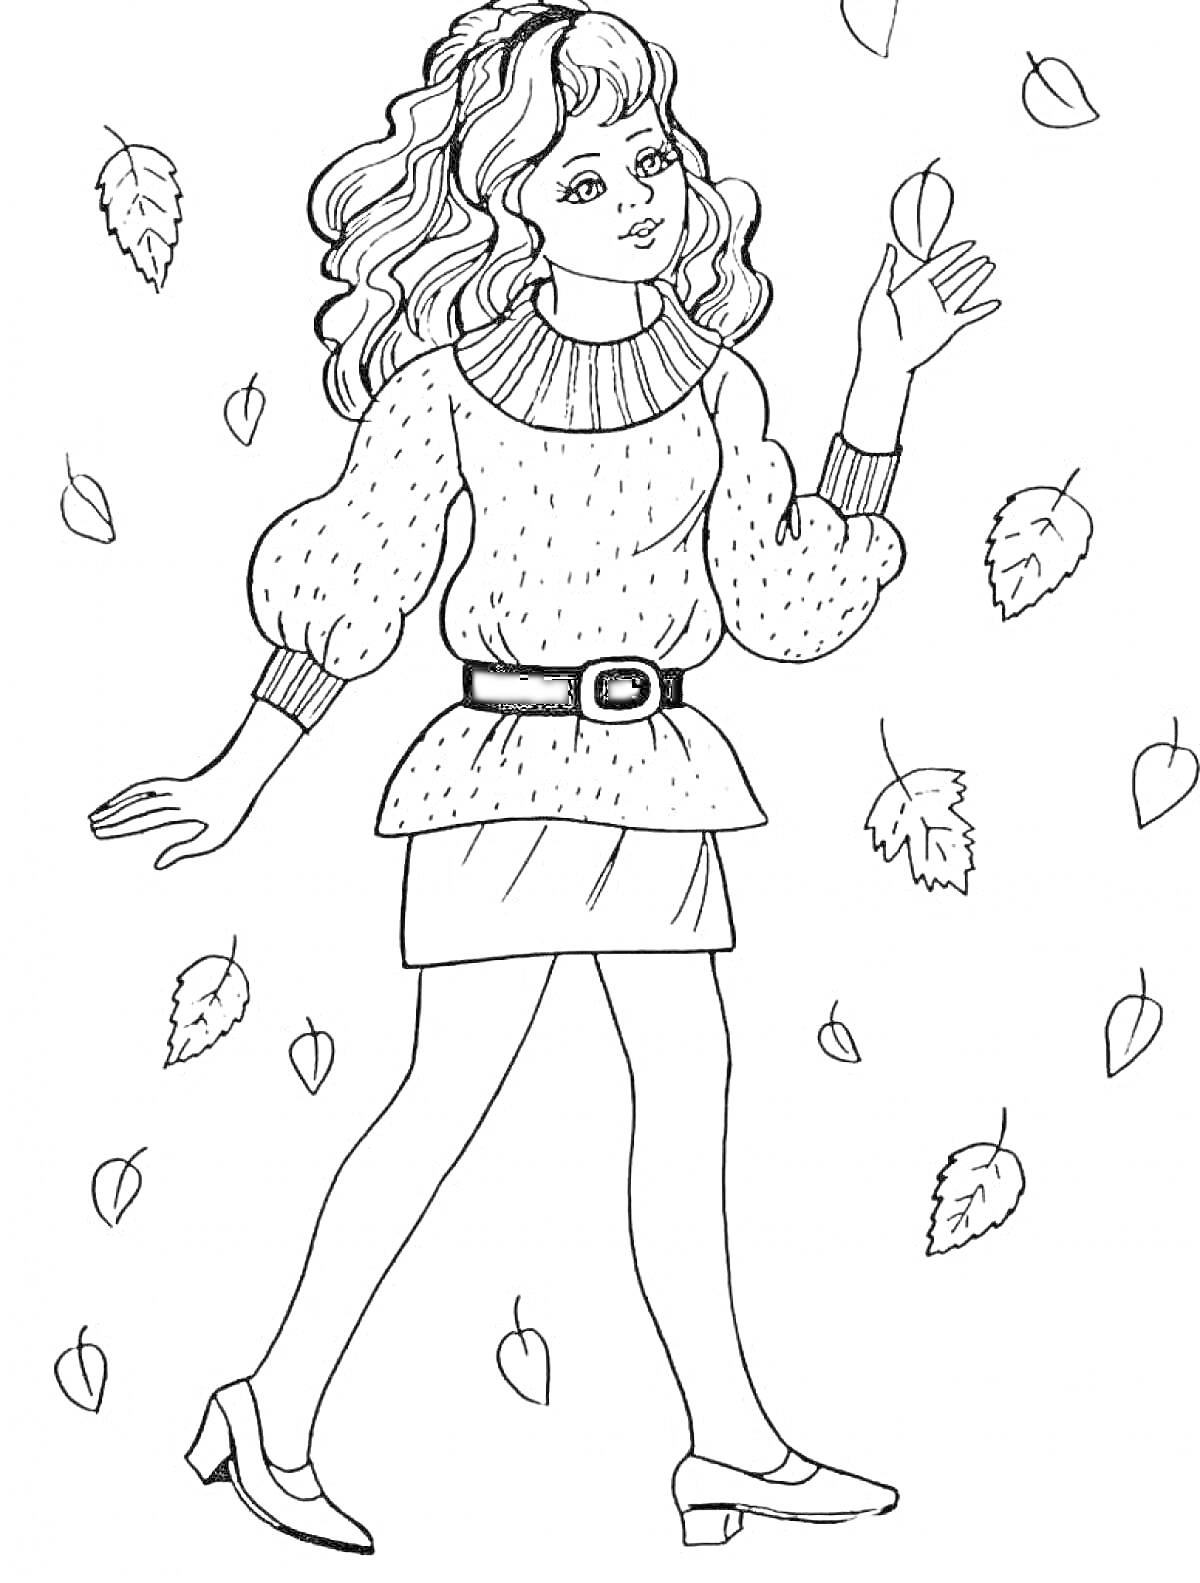 Раскраска Девушка в свитере и юбке среди падающих листьев